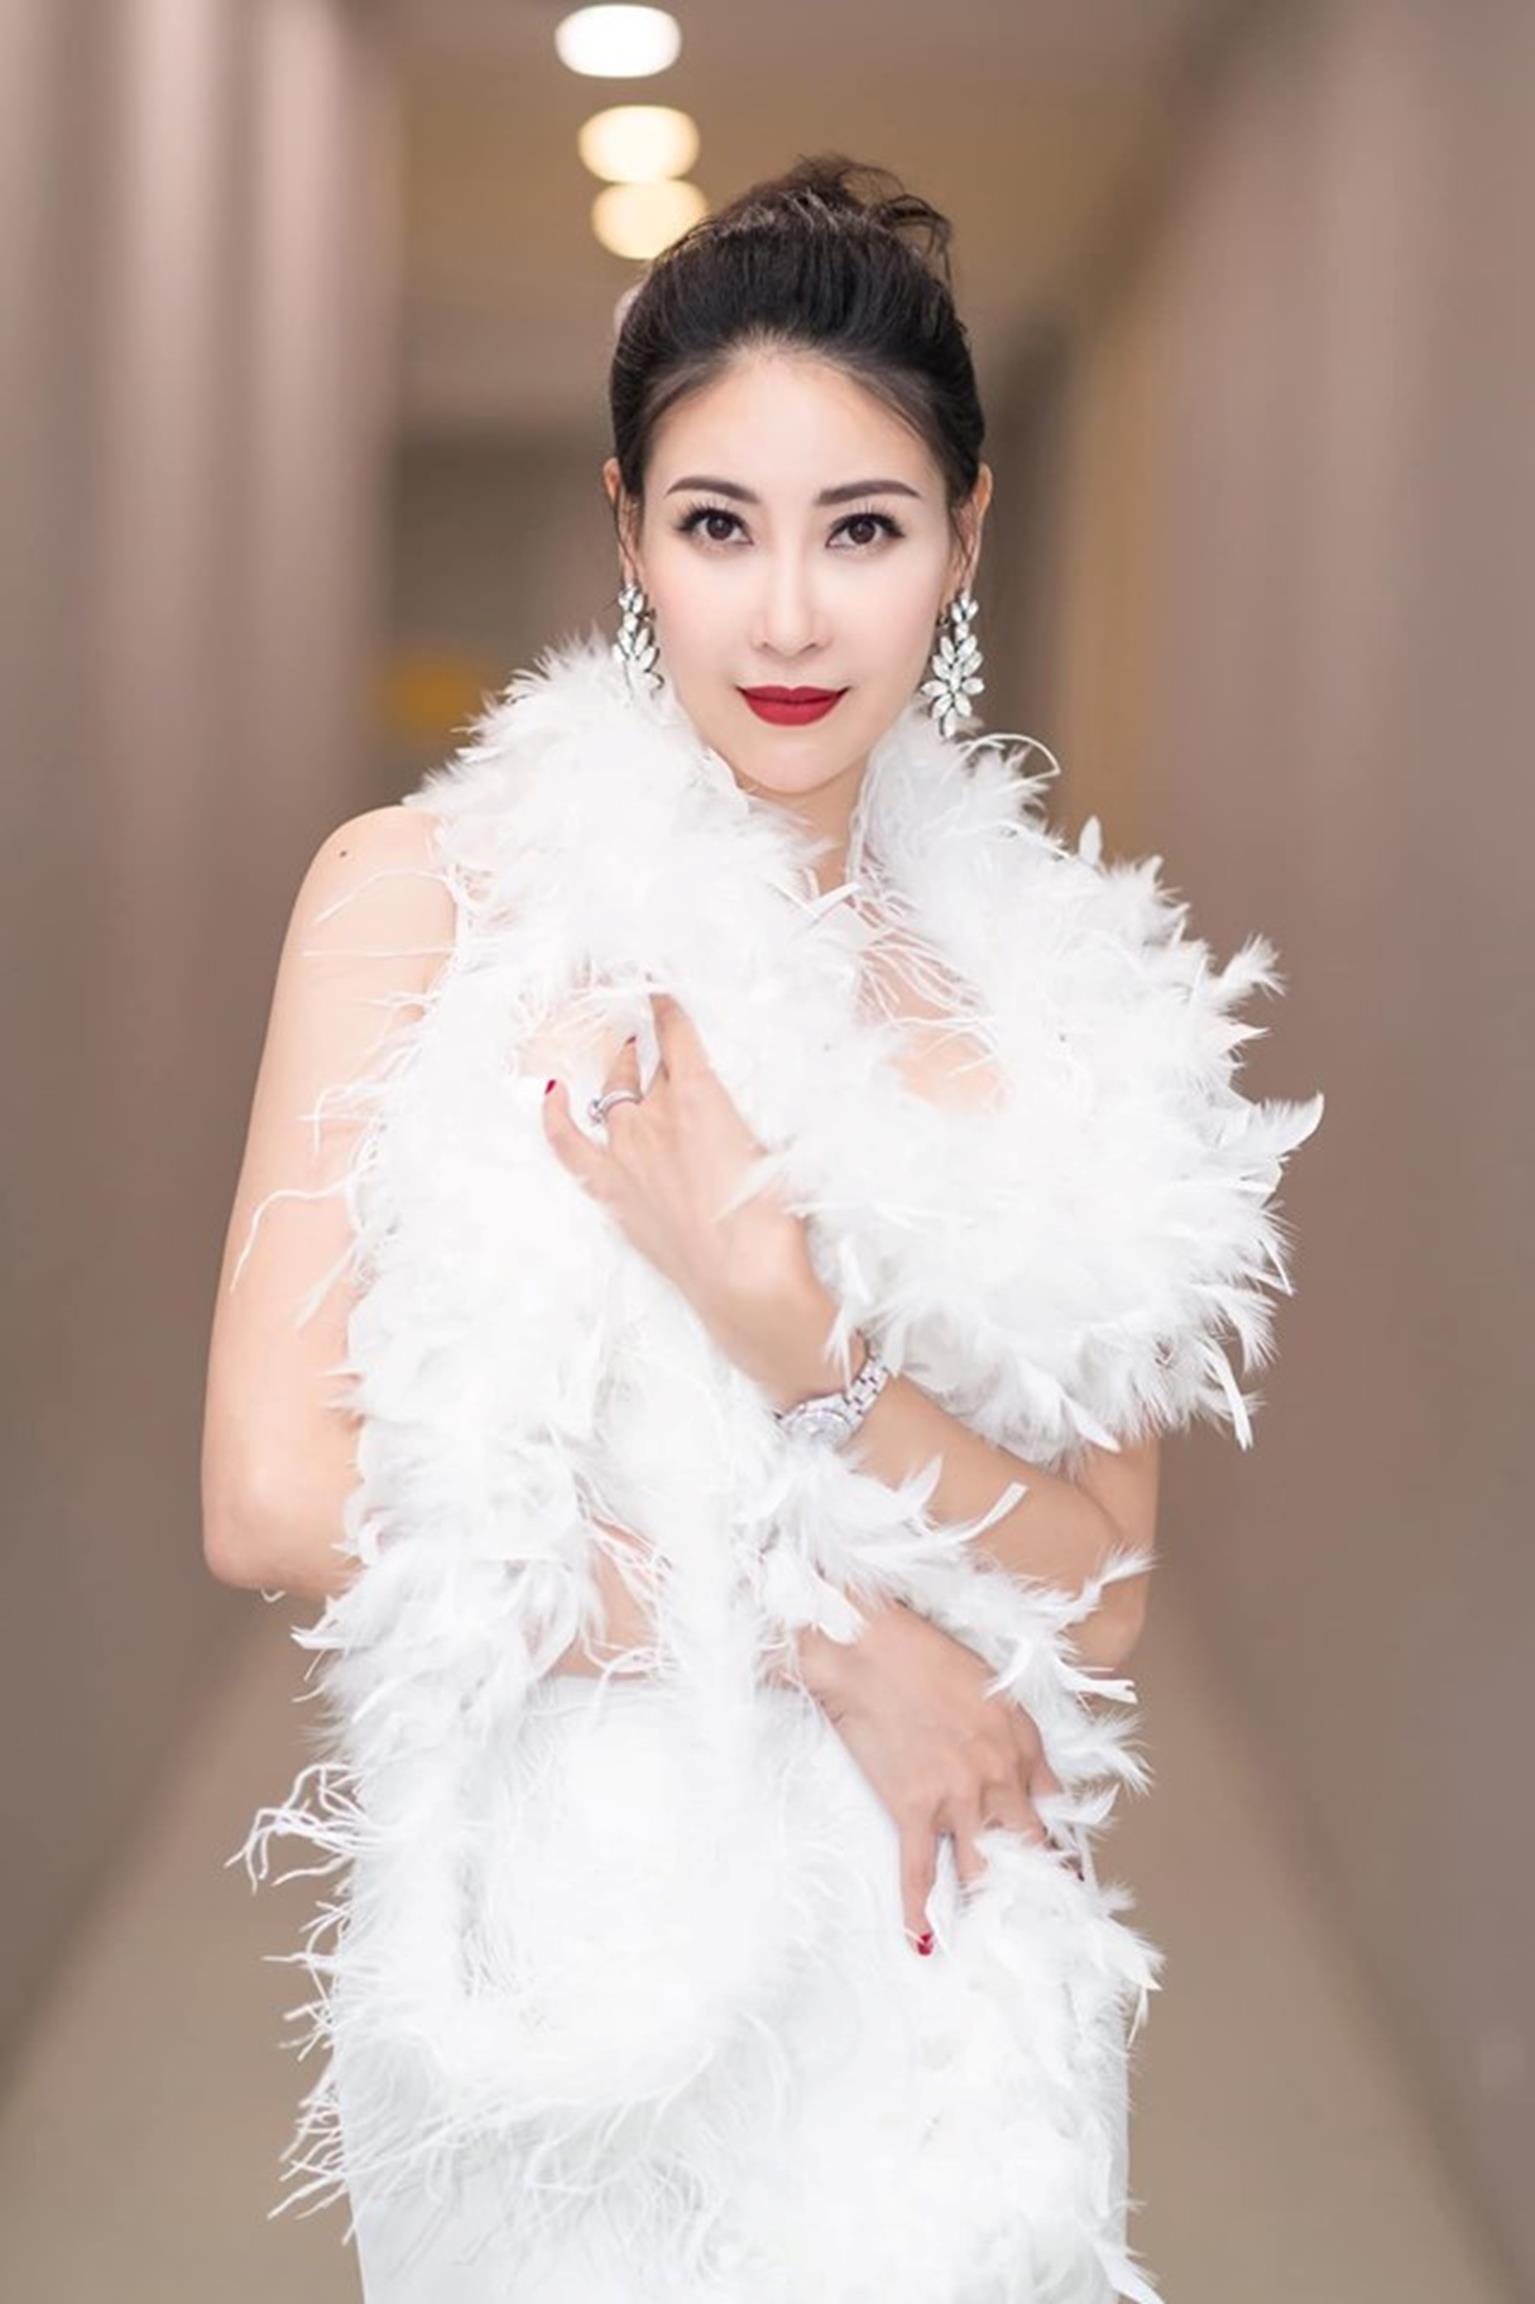 Hoa hậu Hà Kiều Anh mặc váy đẹp như thiên nga, cả showbiz ngước nhìn-6